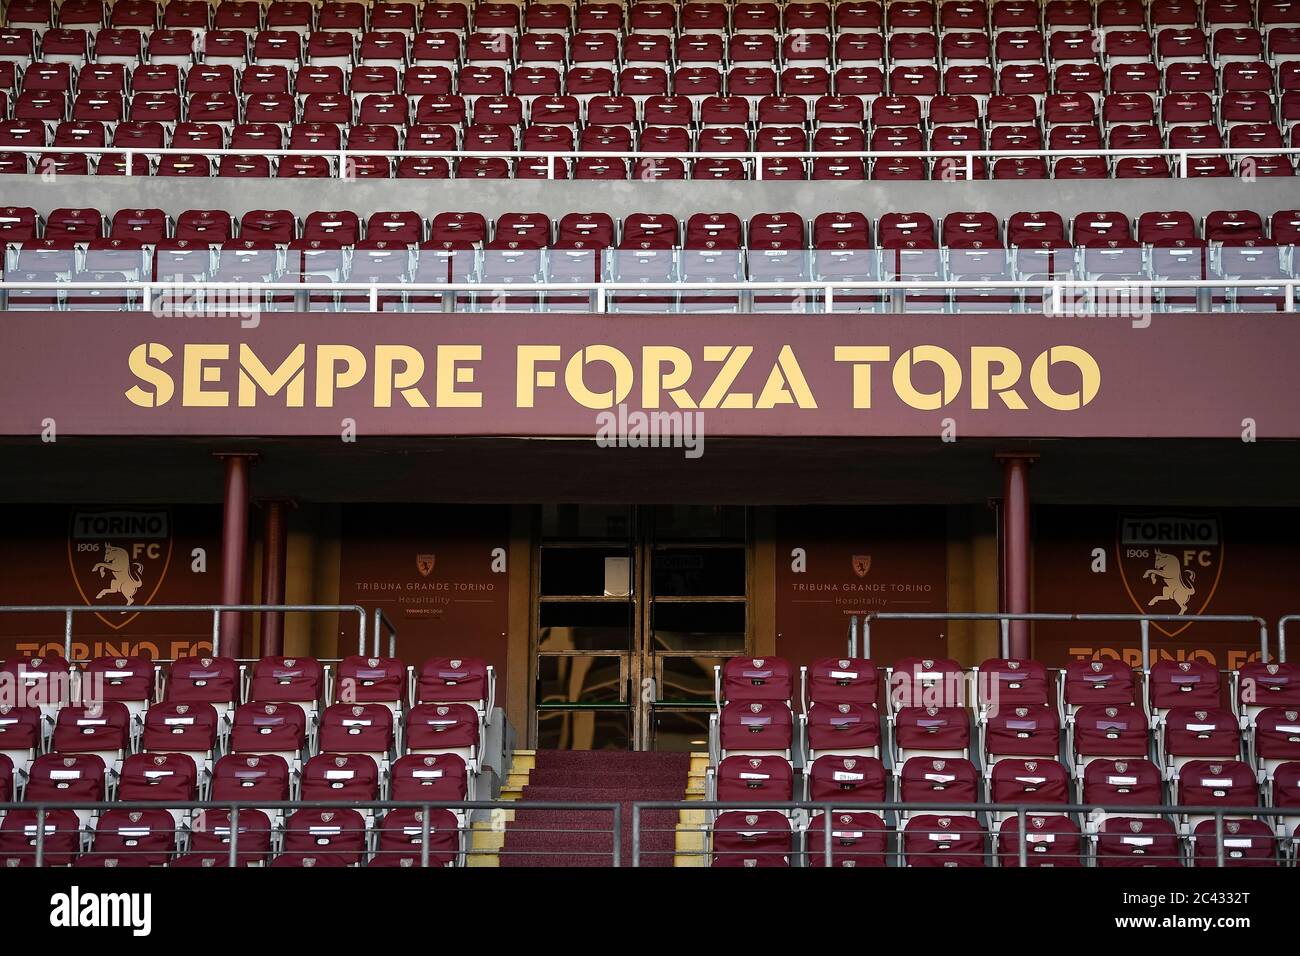 Estádio do Torino mudará de nome para homenagear time histórico - ESPN